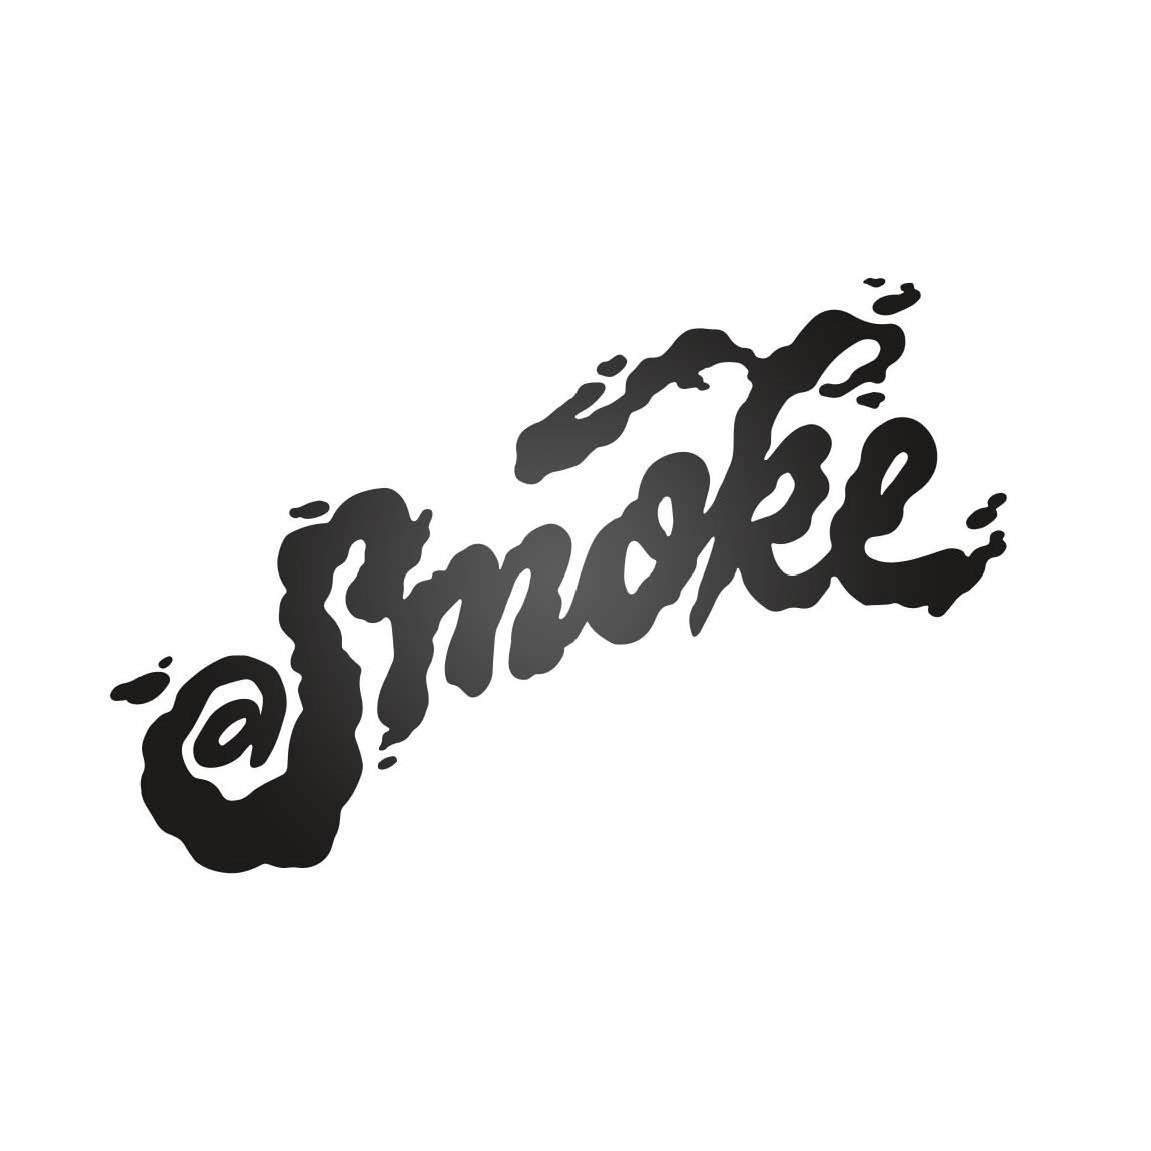 Trademark Logo SMOKE